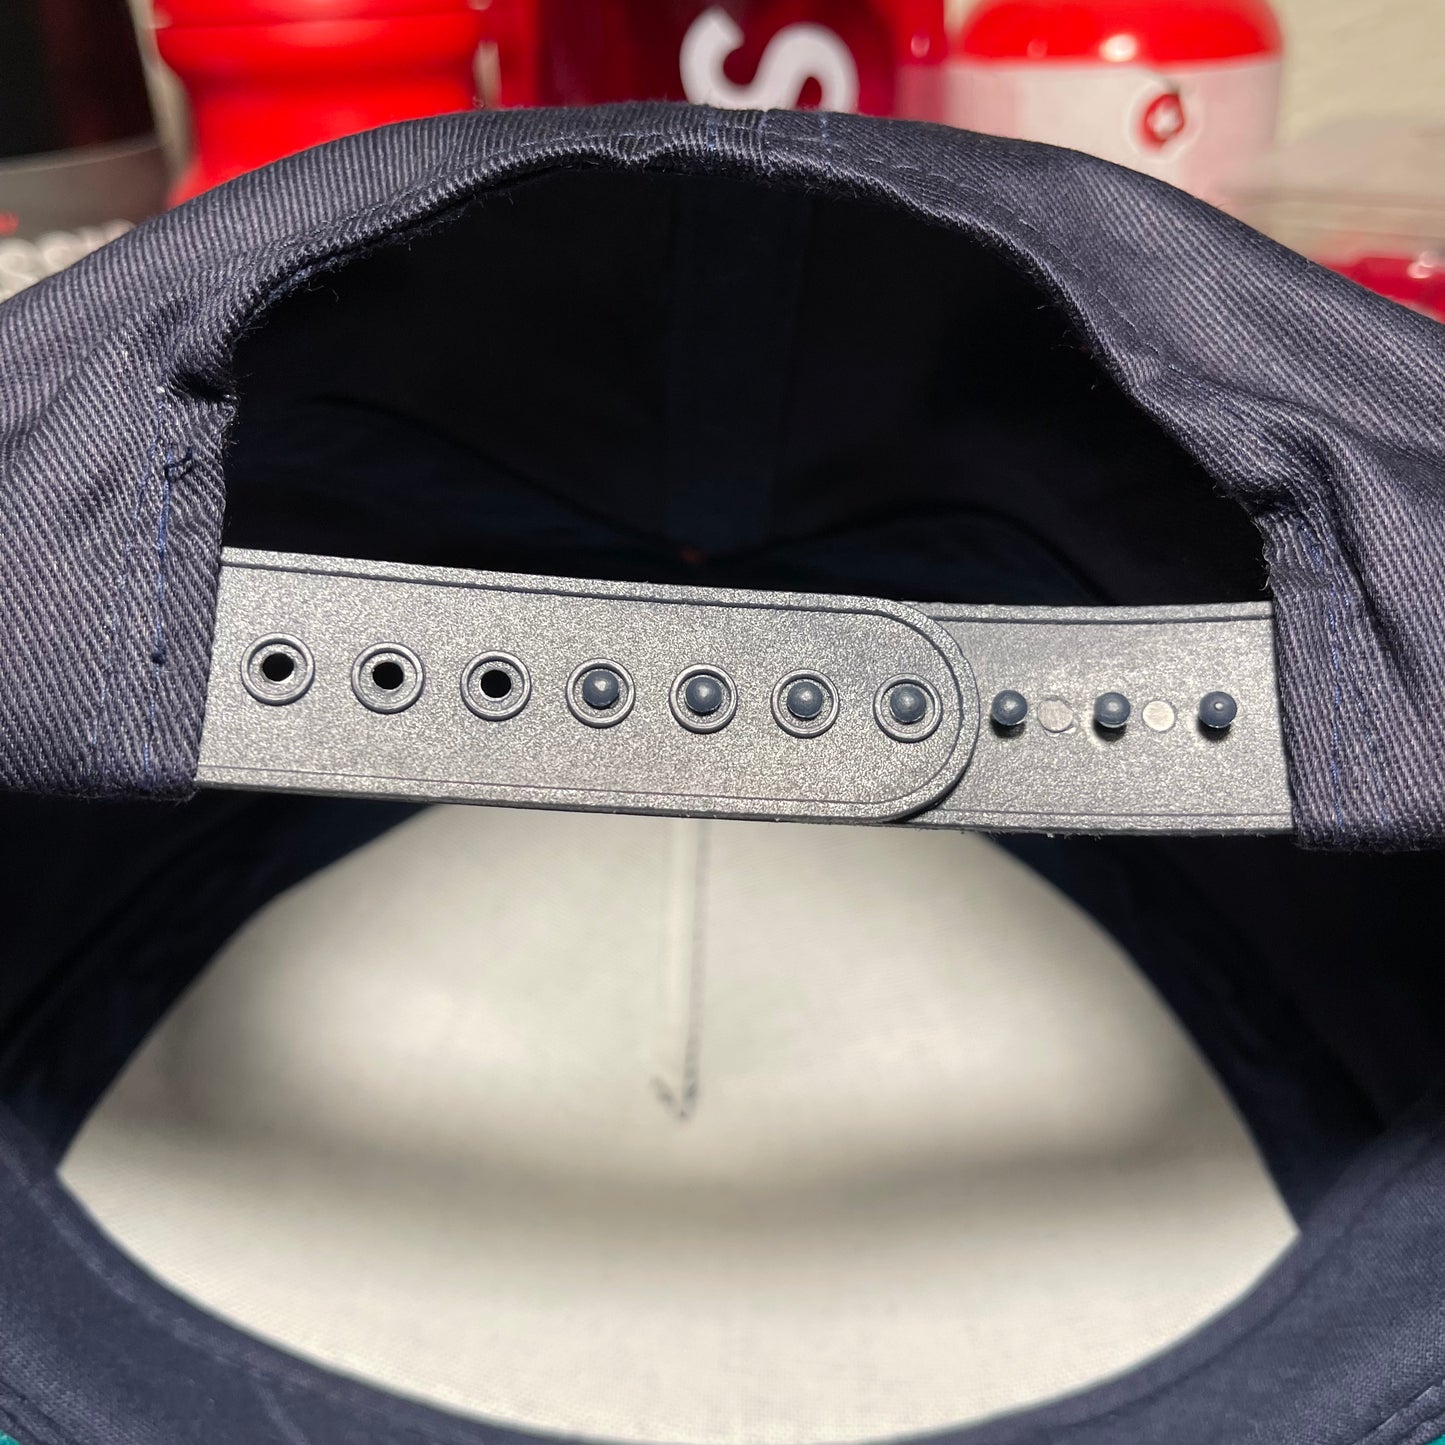 Albertson’s Boise Hawks Promotional Snapback hat.